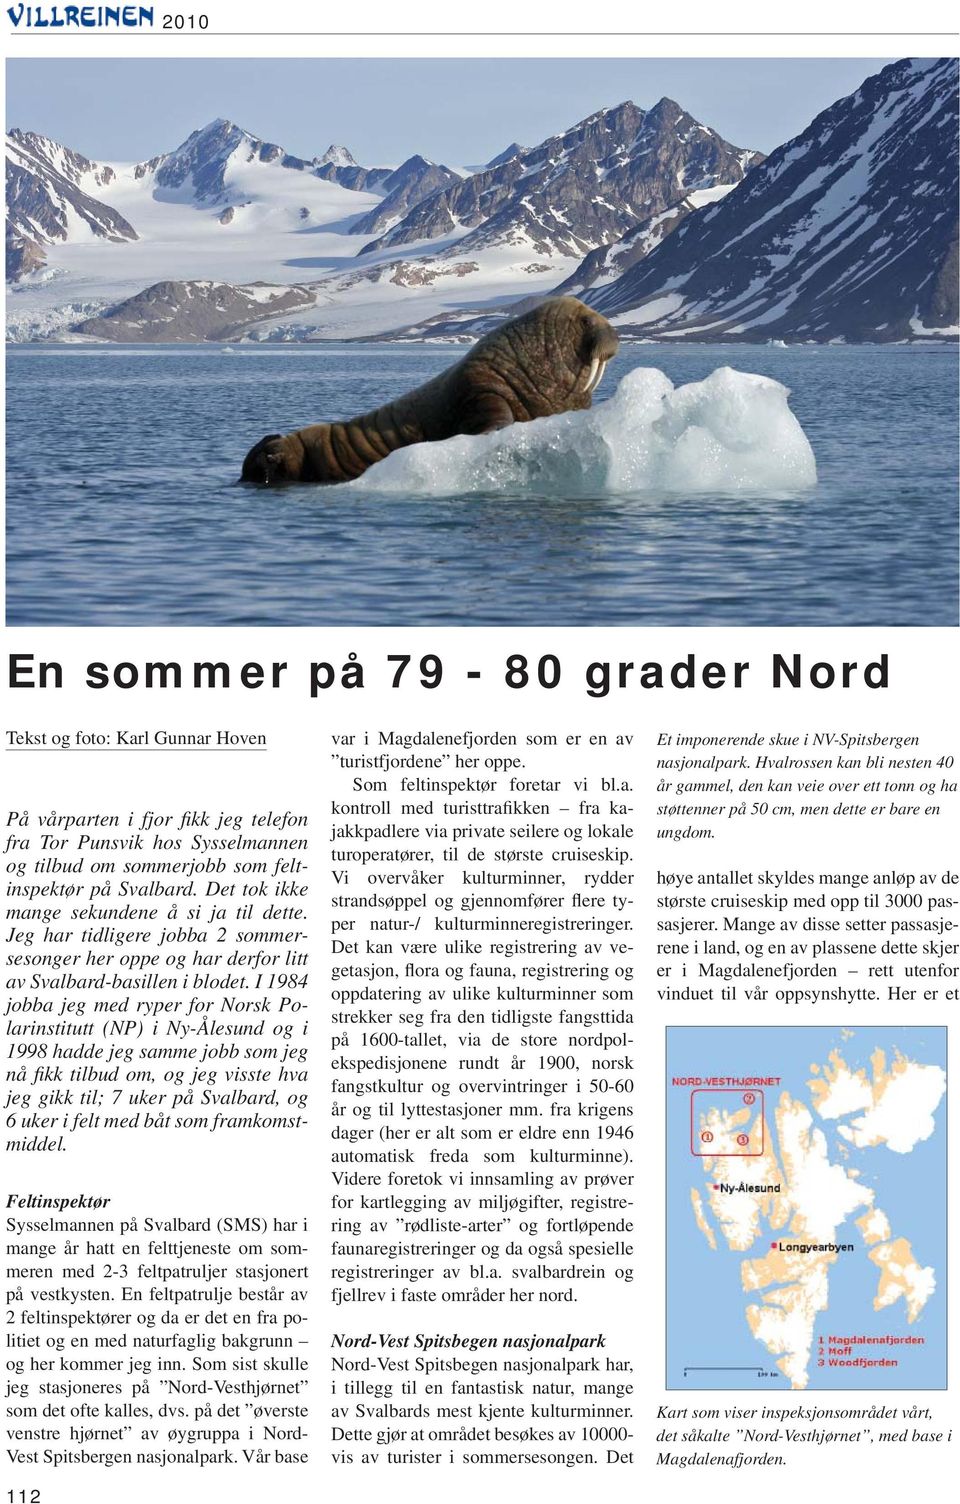 I 1984 jobba jeg med ryper for Norsk Polarinstitutt (NP) i Ny-Ålesund og i 1998 hadde jeg samme jobb som jeg nå fi kk tilbud om, og jeg visste hva jeg gikk til; 7 uker på Svalbard, og 6 uker i felt